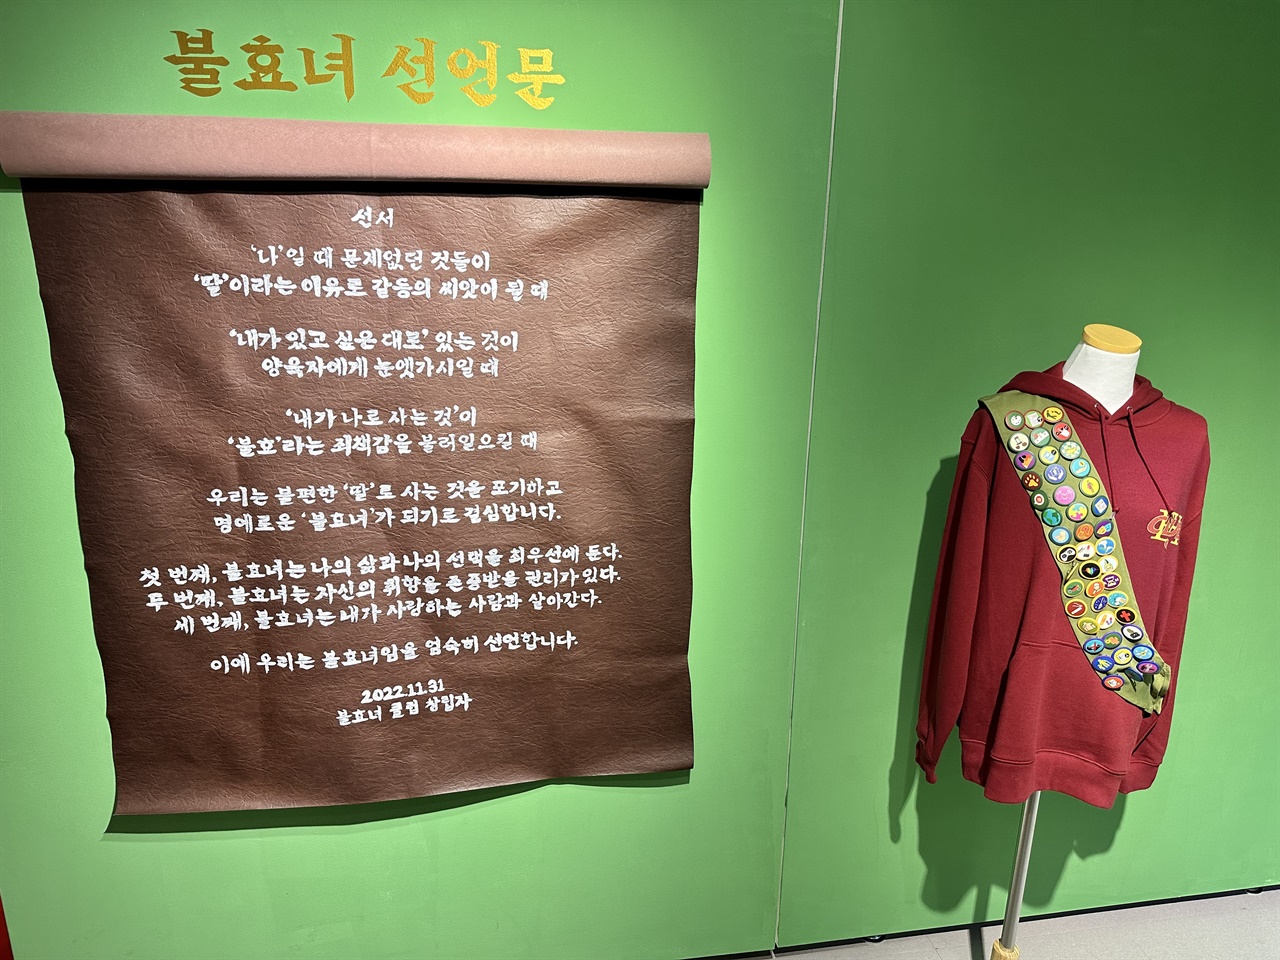 창작그룹 MOIZ가 만든 '불효녀 선언문'